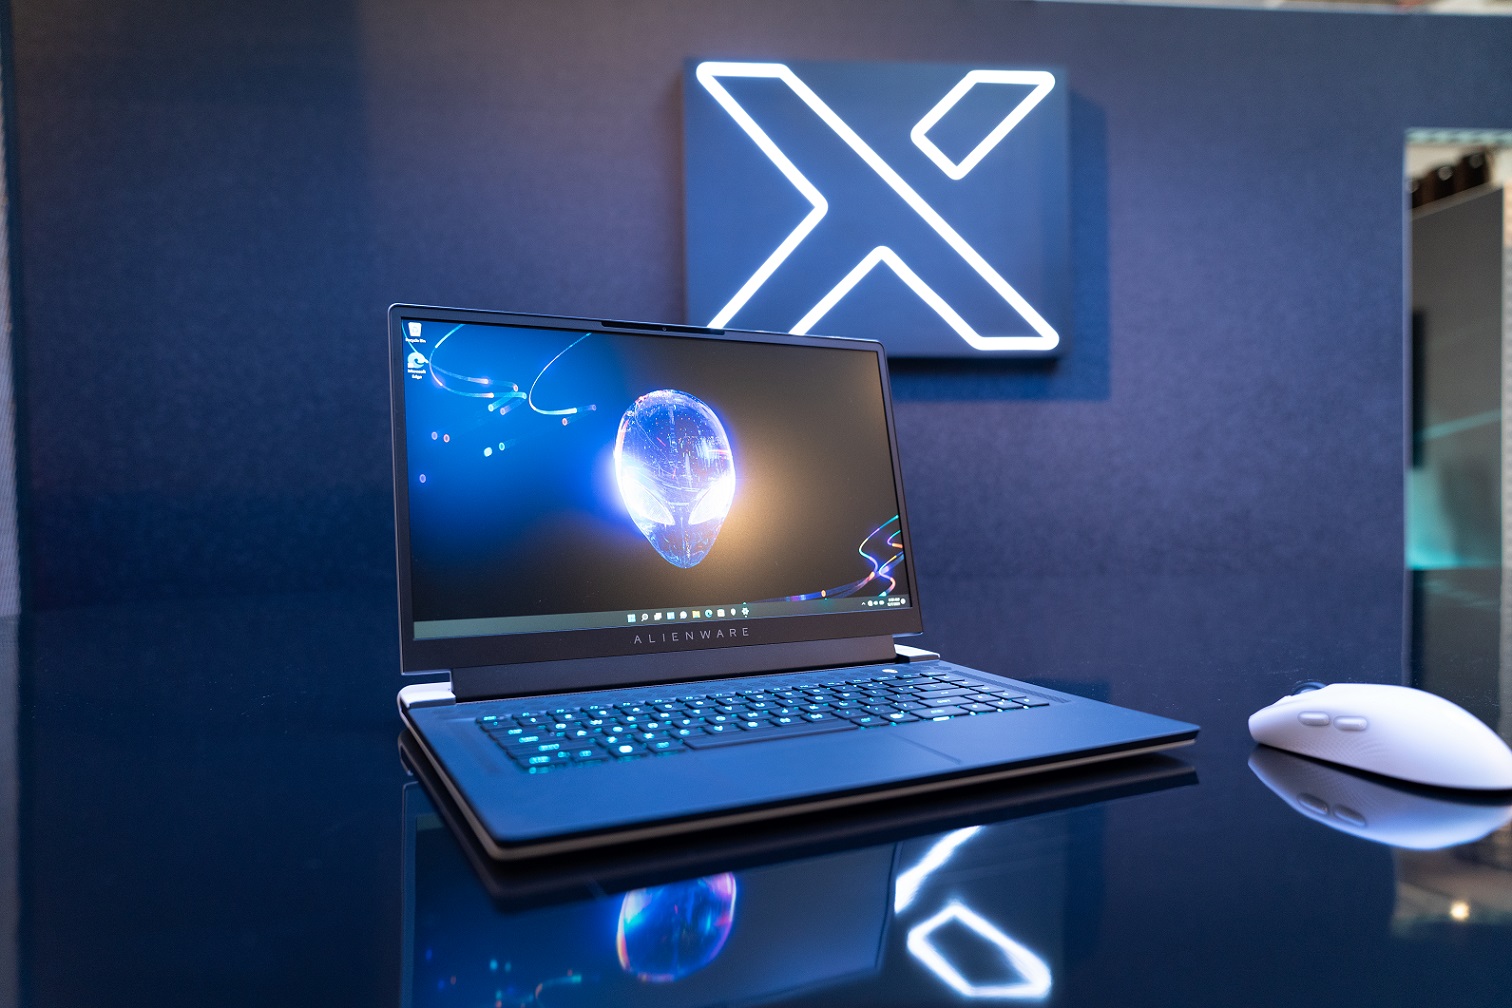 Alienware-x15-laptop